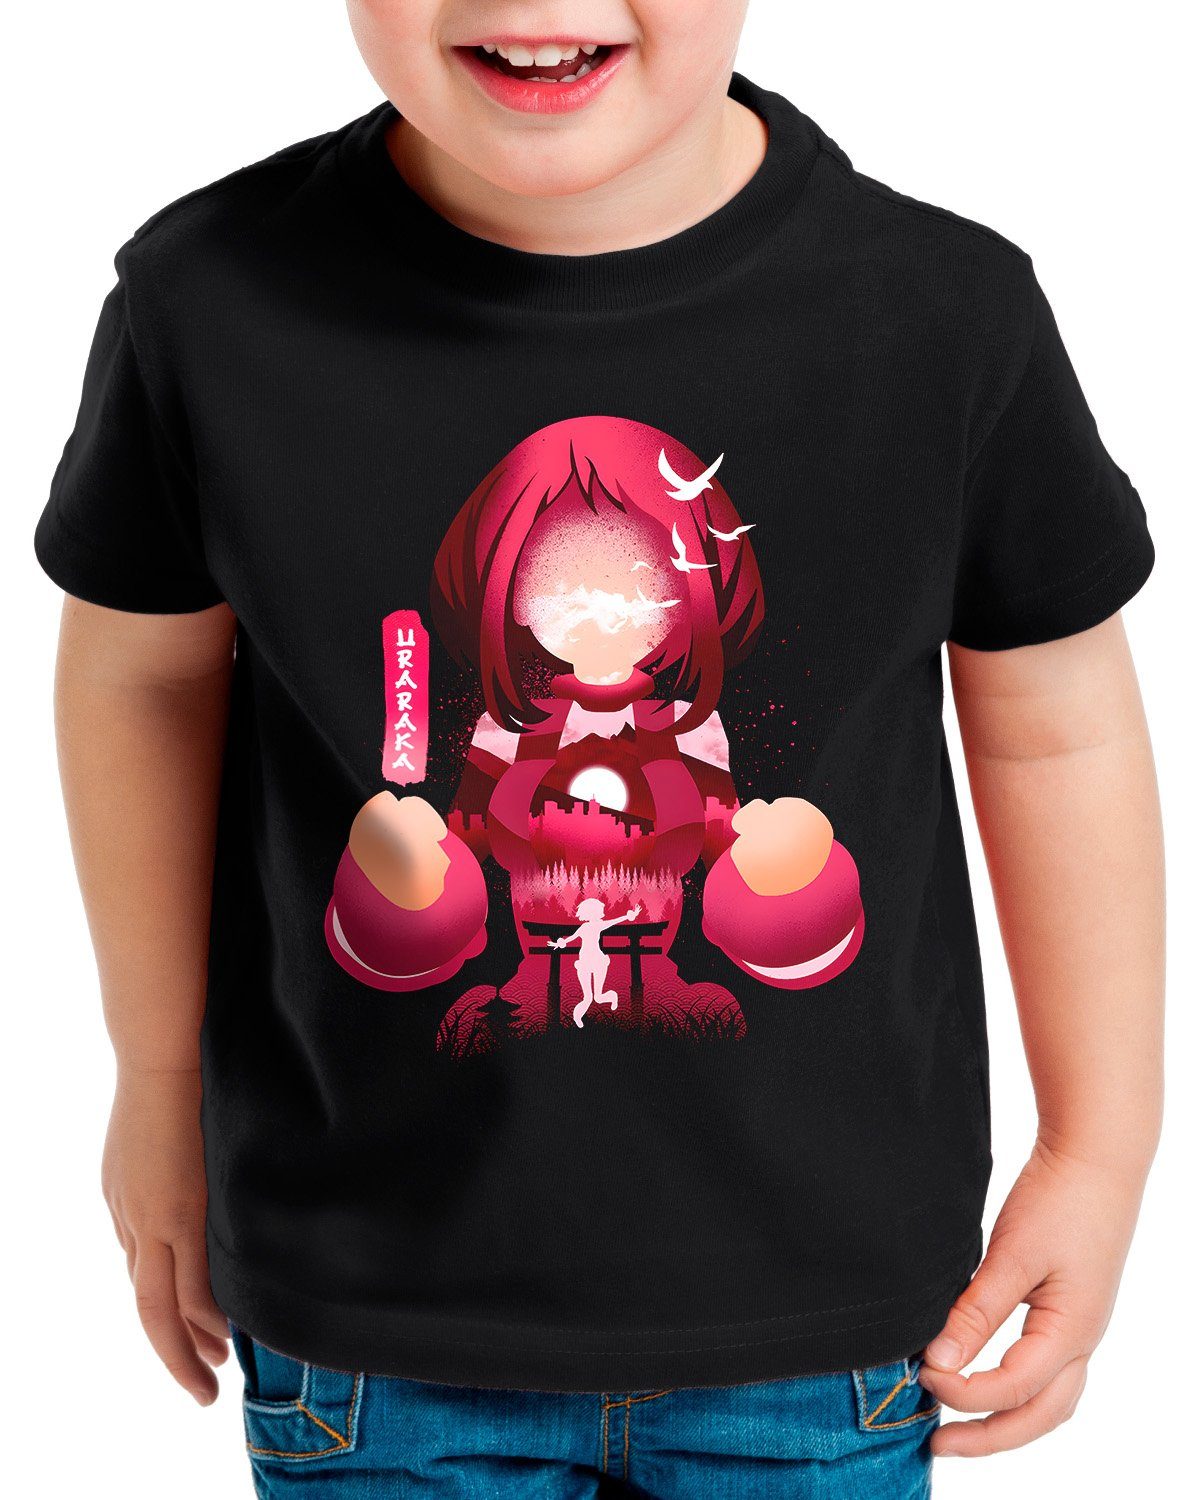 100%ige Garantie style3 Print-Shirt Kinder cosplay my anime T-Shirt academia Uravity hero manga